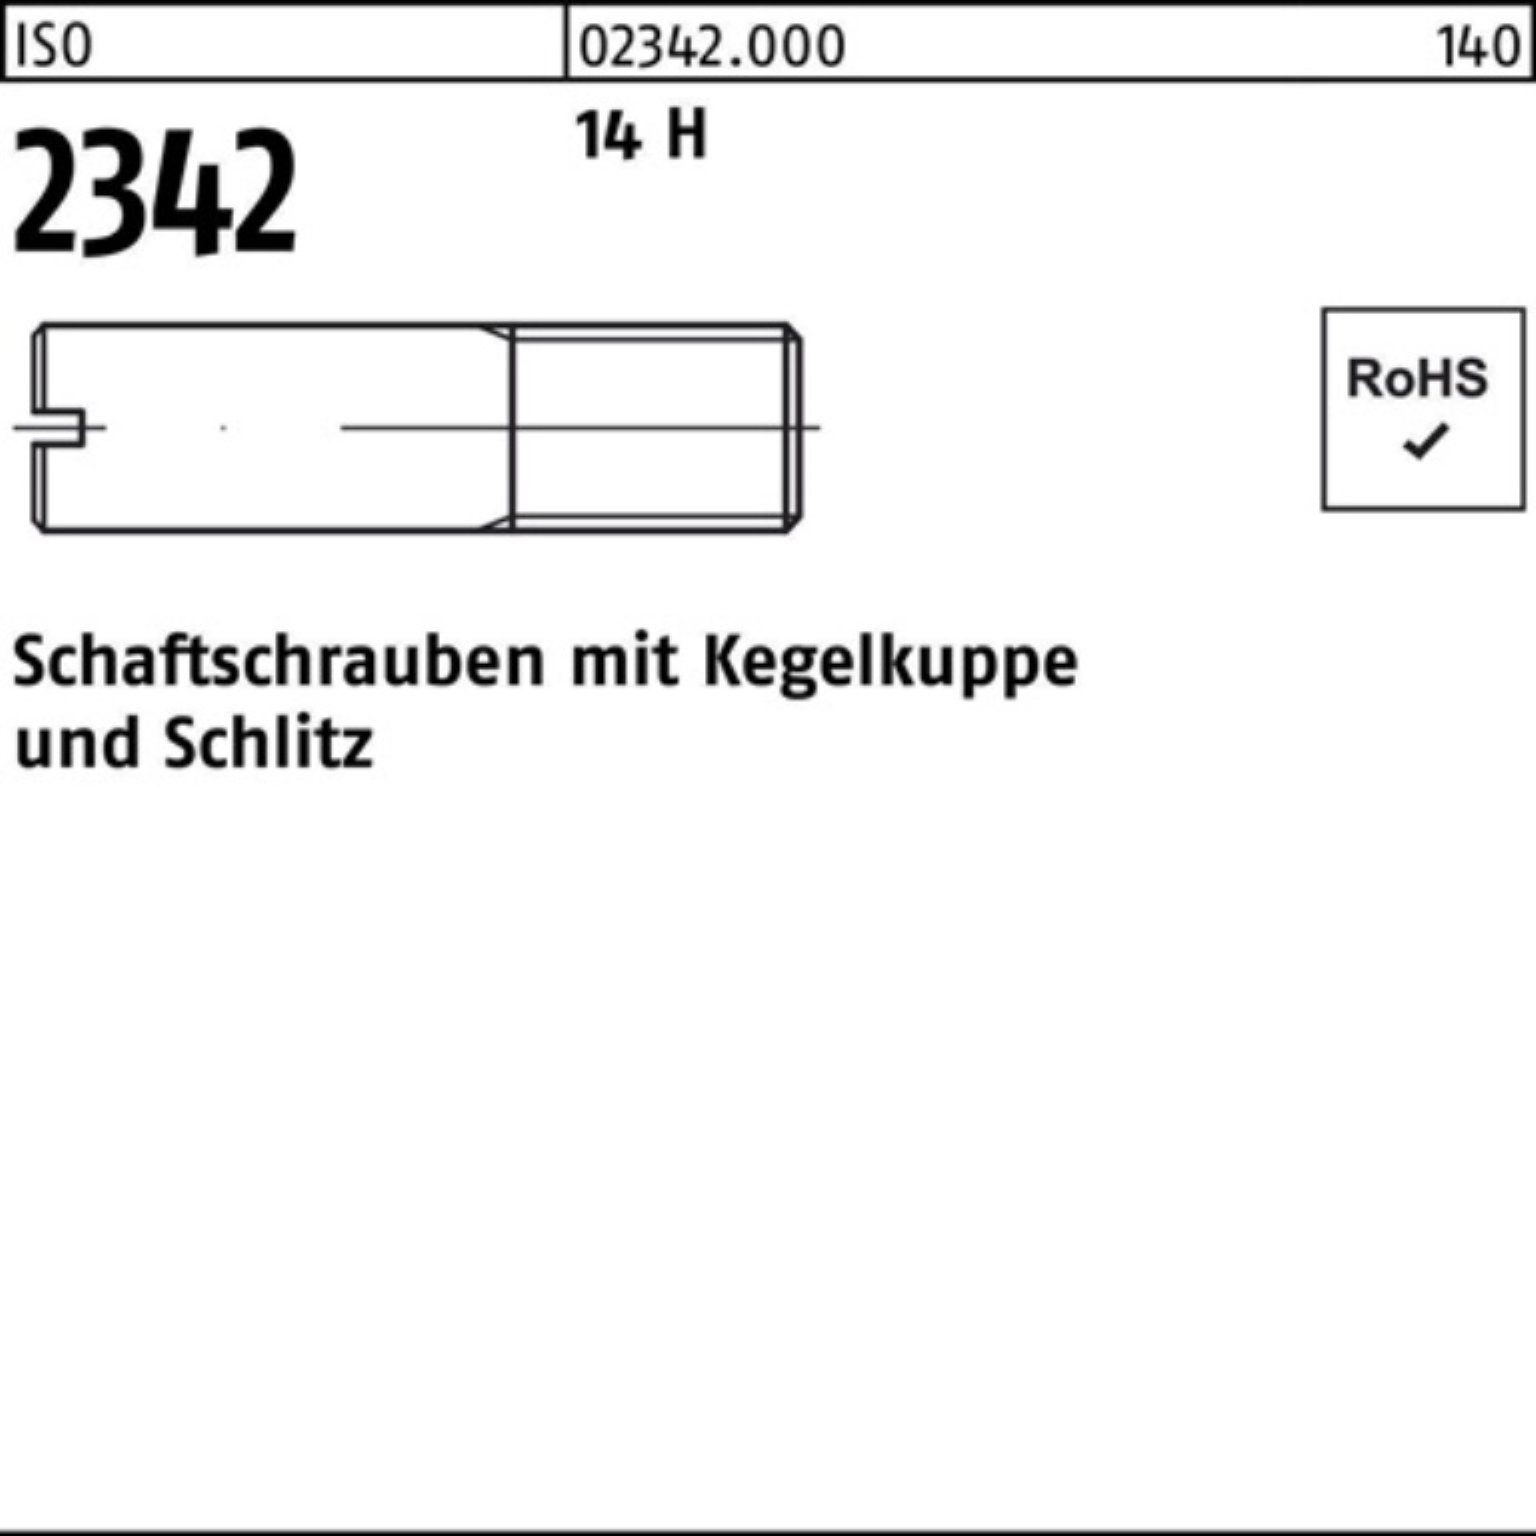 Reyher Schraube 100er Pack Schaftschraube ISO 2342 Kegelkuppe/Schlitz M6x 45 14 H 100